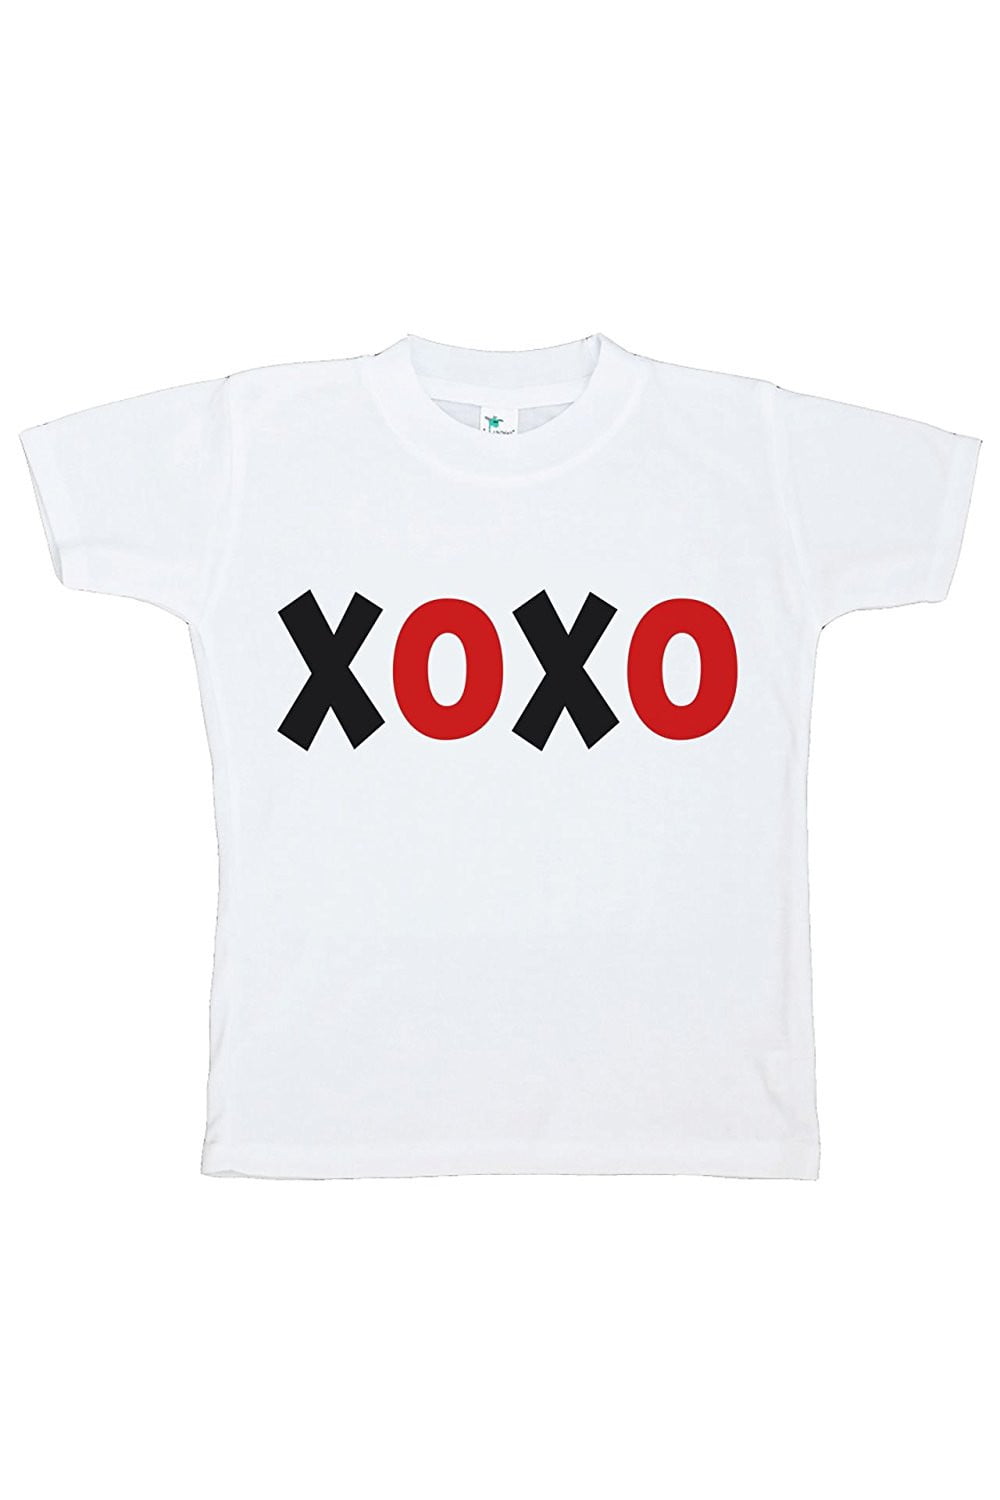 Happy Valentine’s Day Short-Sleeve XOXO Unisex T-Shirt Holiday XOXO Valentine’s Day Gift